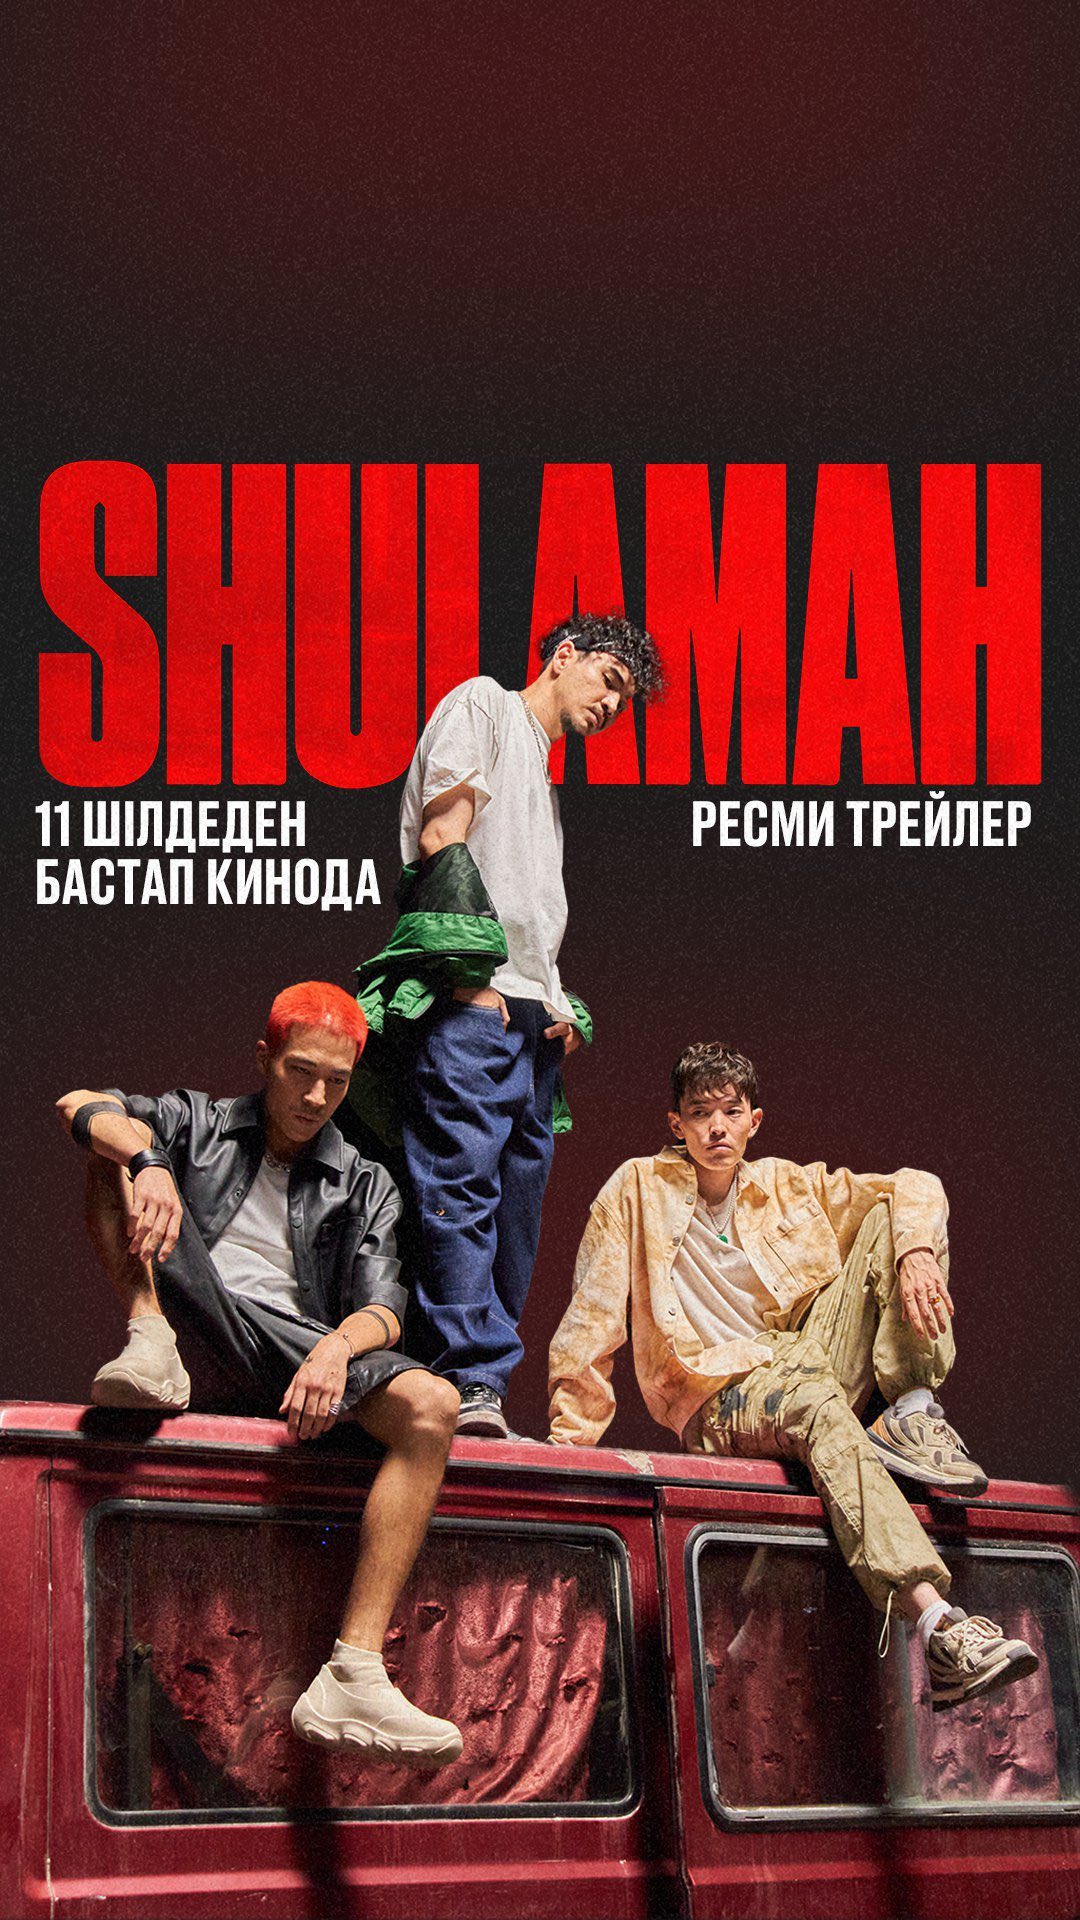 Самый стильный и музыкальный фильм года - SHULAMAH